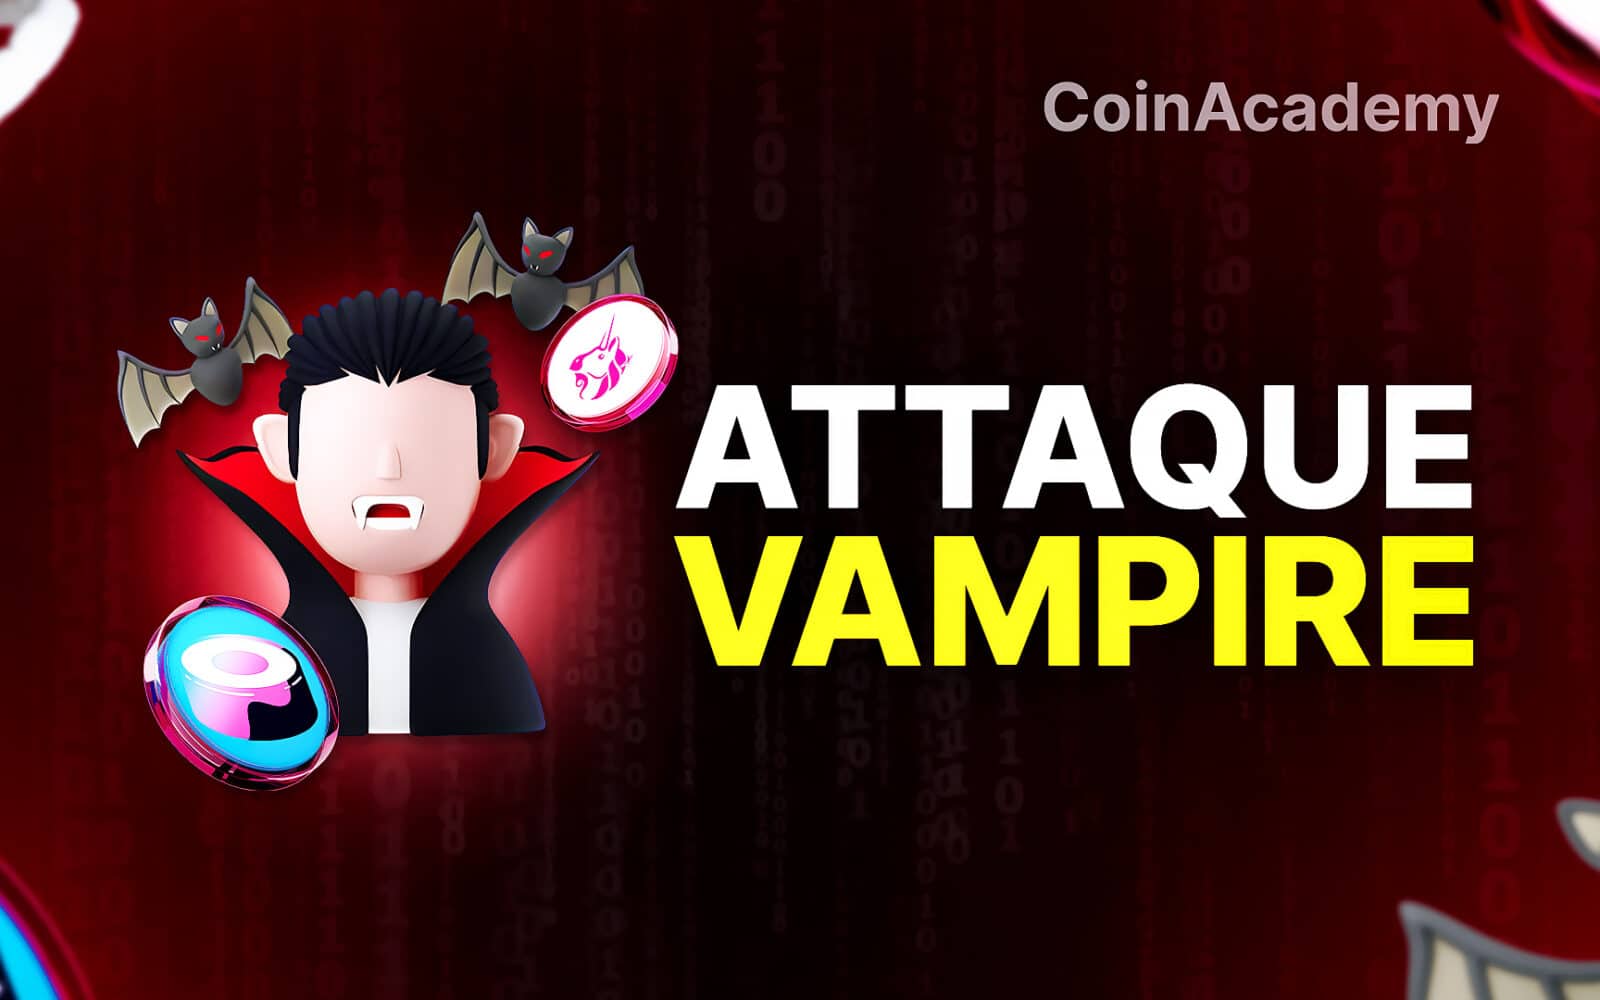 Attaque Vampire Crypto